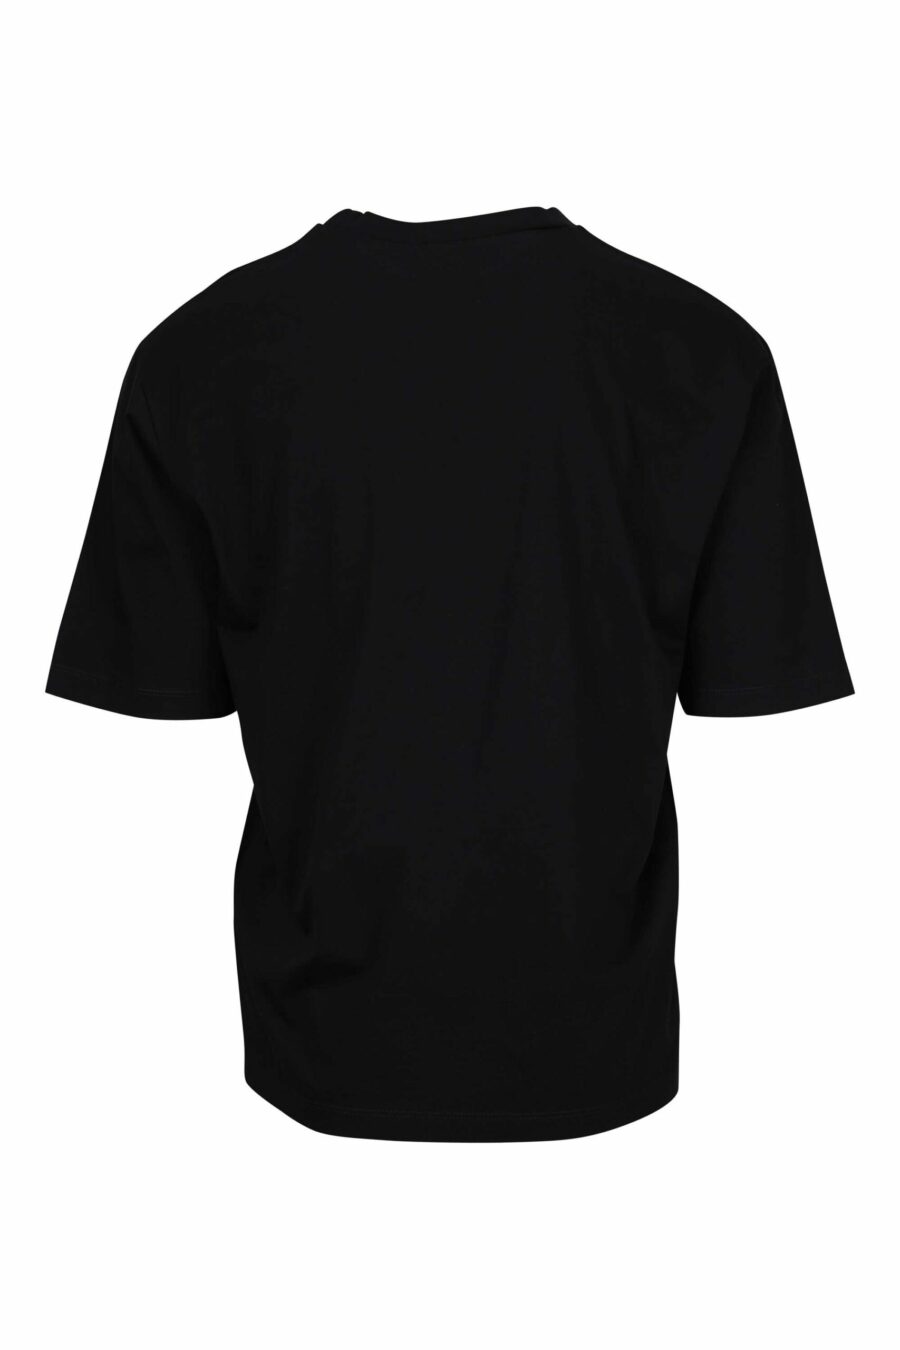 T-shirt noir surdimensionné avec maxilogo "icon" flou vert fluo - 8054148359669 1 scaled